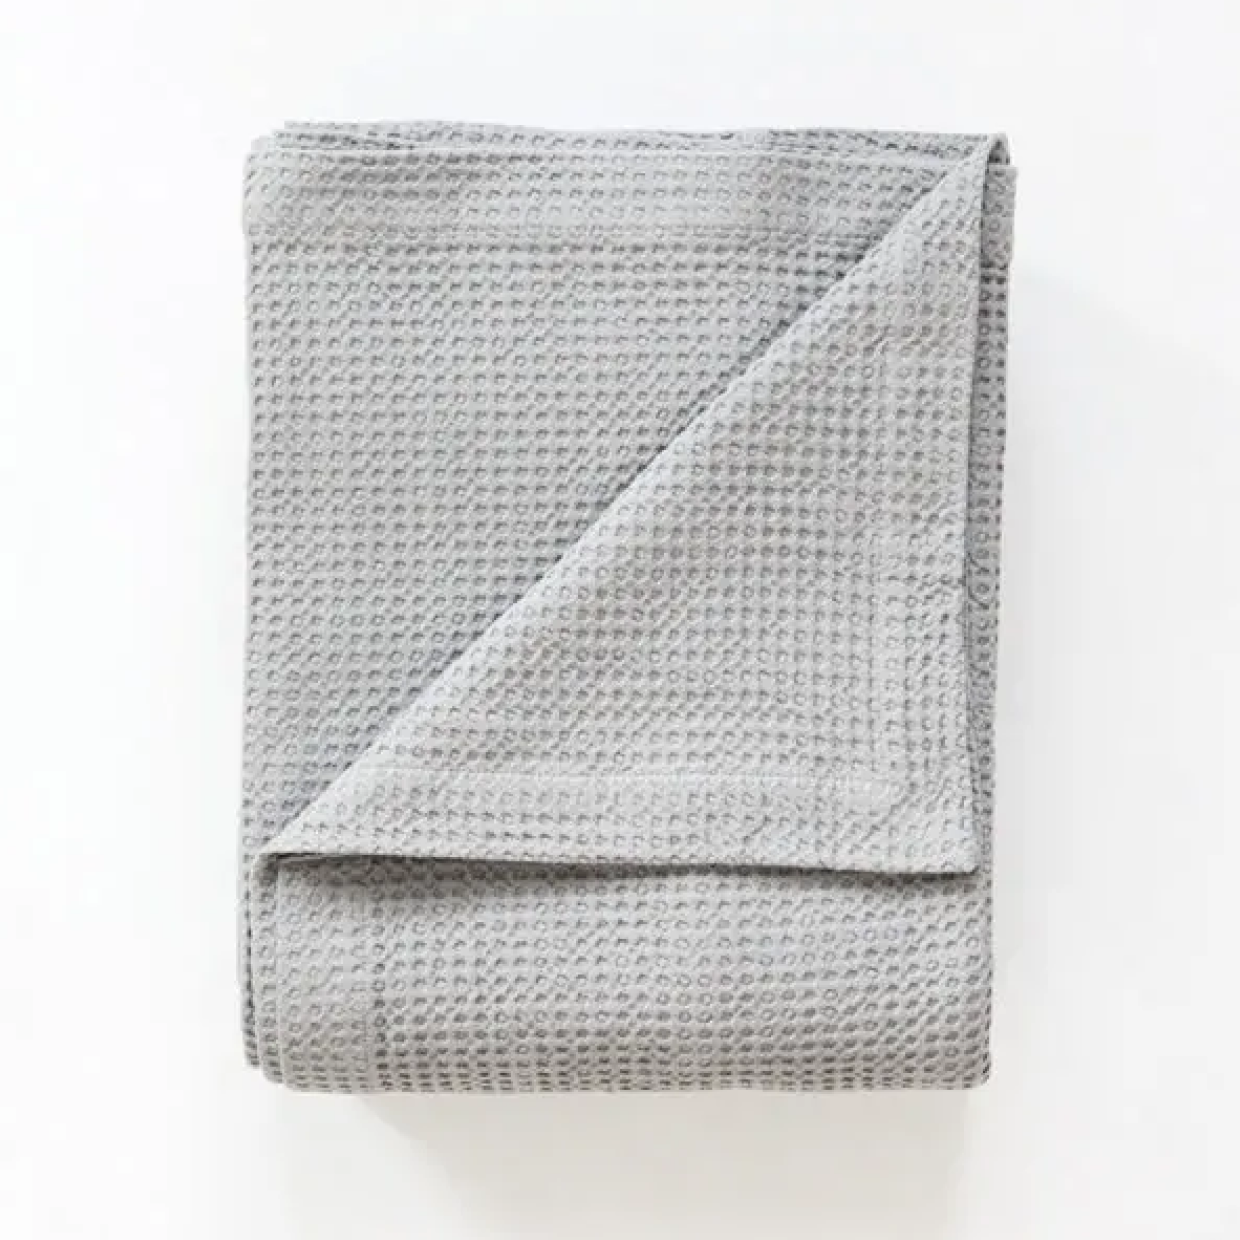 ベッドカバー・ブランケット 150×200cm / Mungo Cobble Weave Blanket